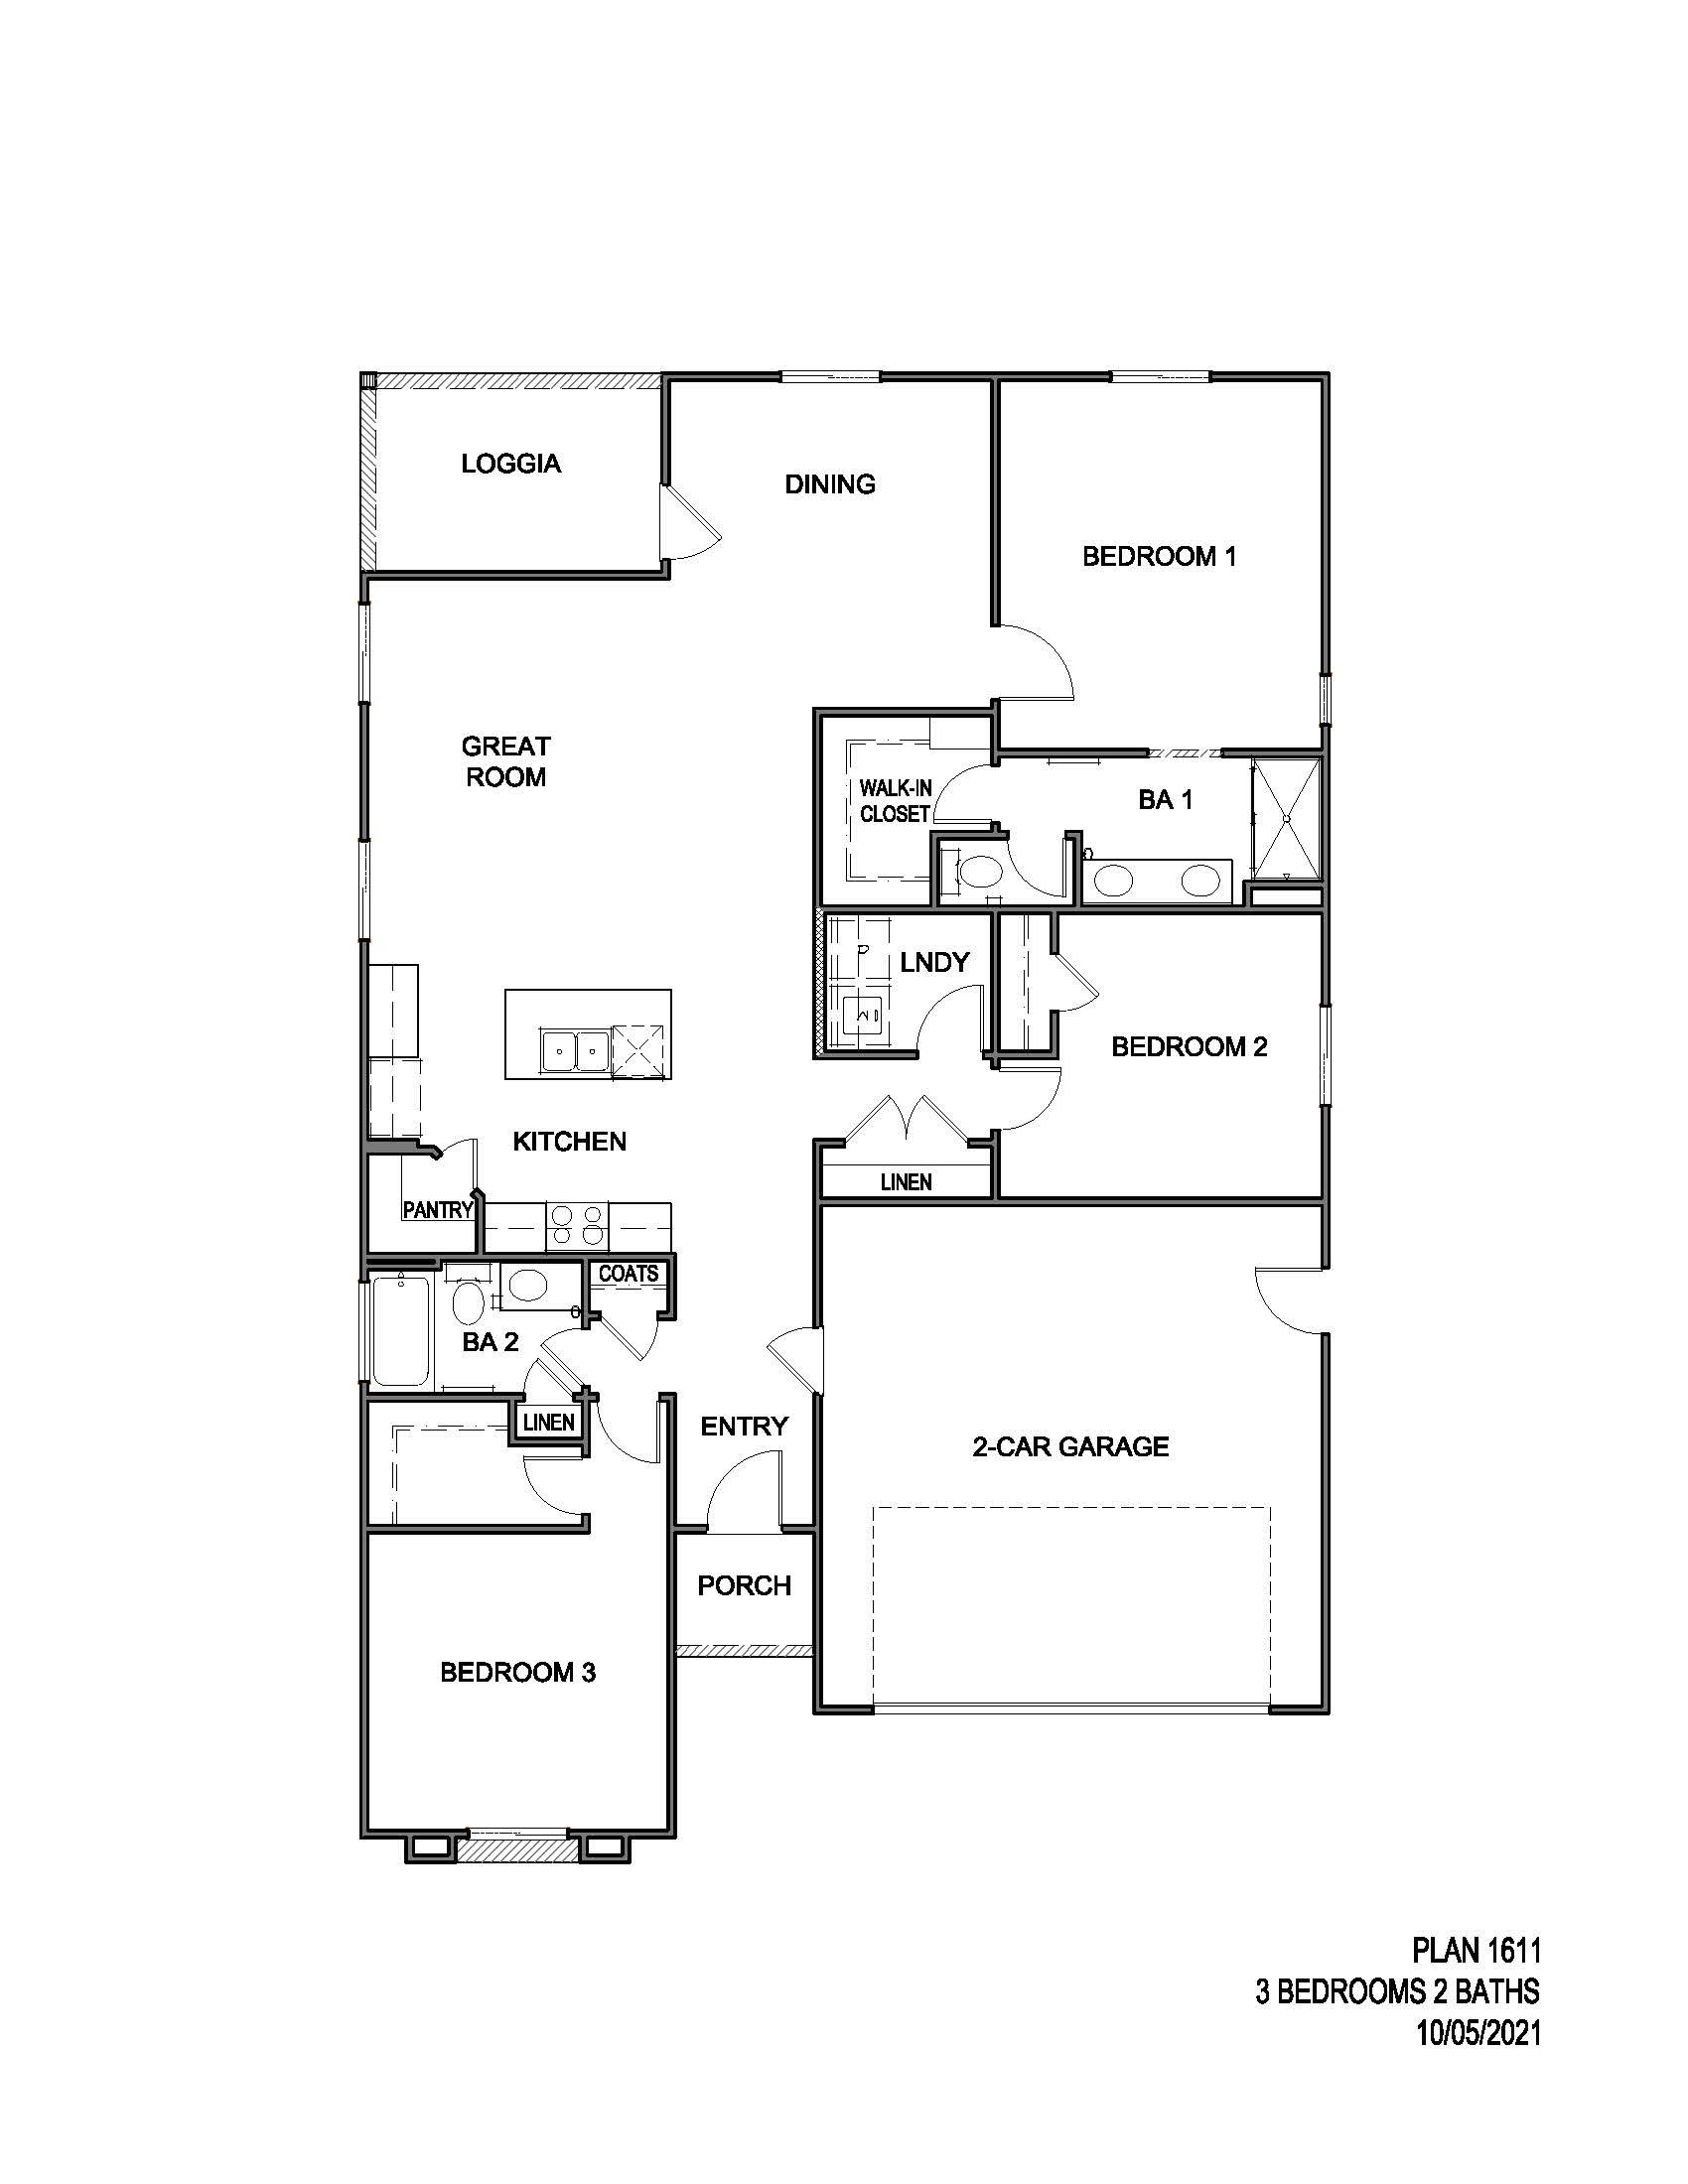 Single floor floorplan 1611 with 3 bedrooms 2 bathrooms